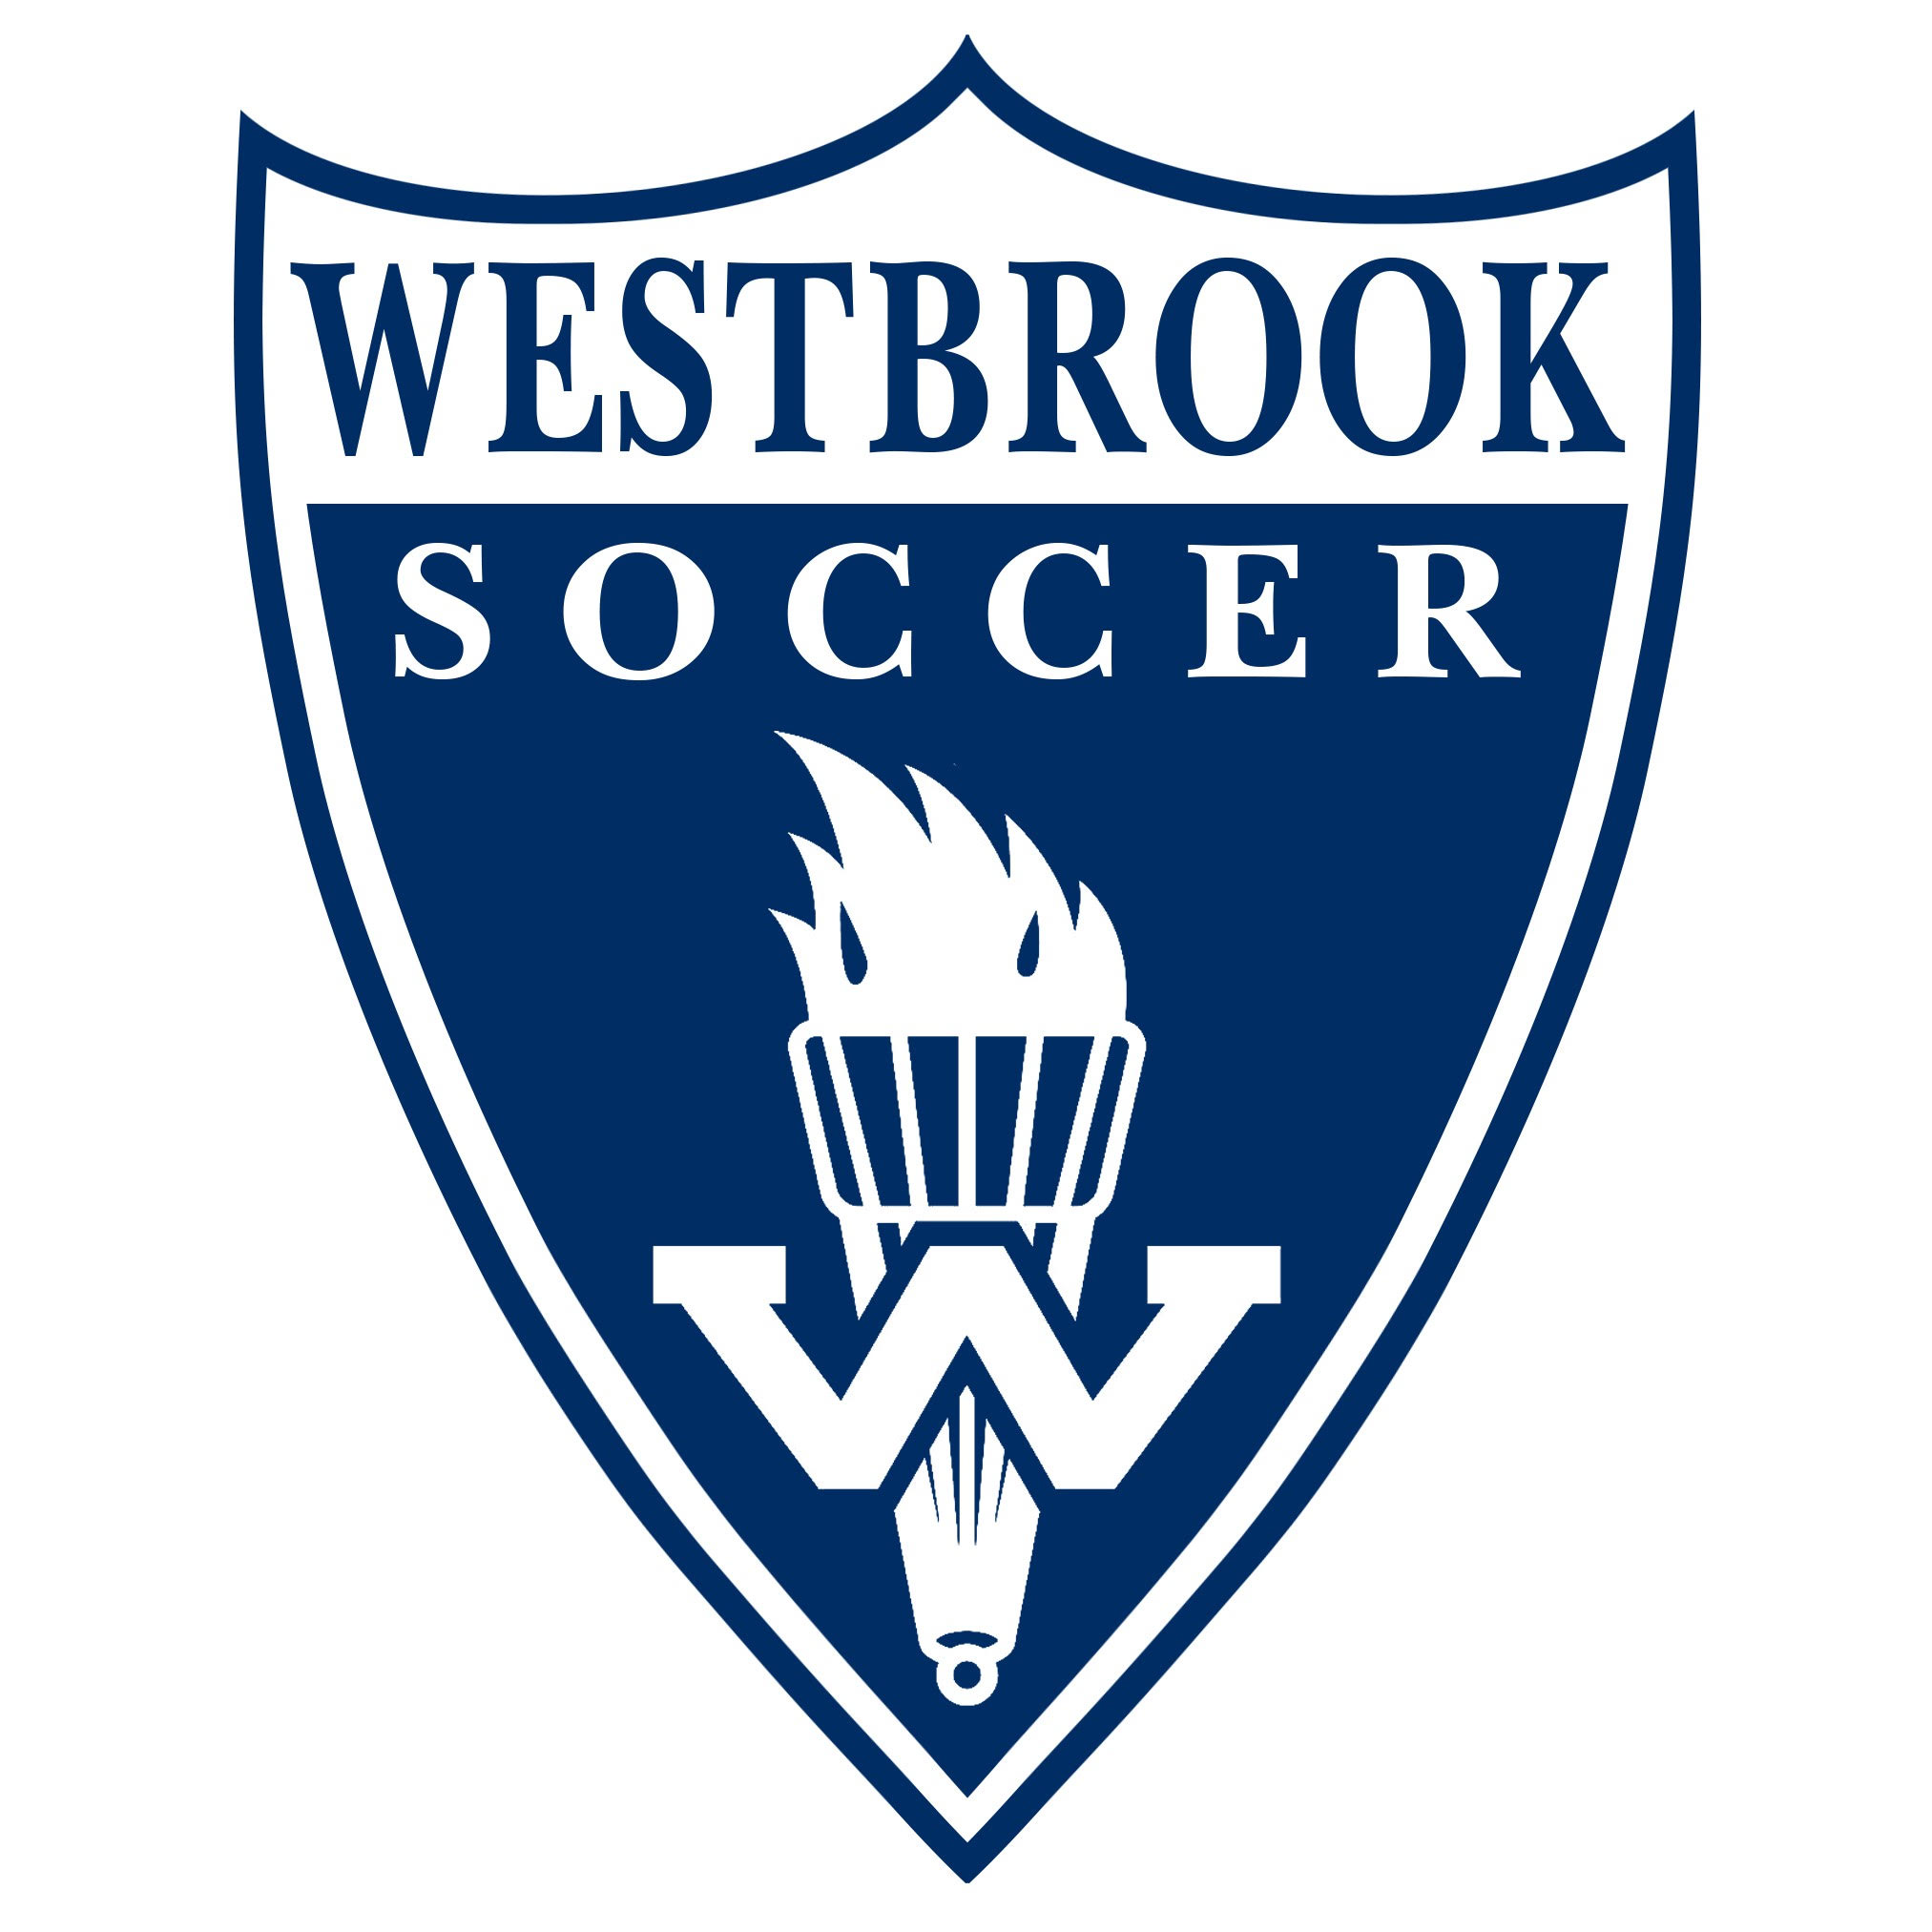 Westbrook Soccer Club team badge